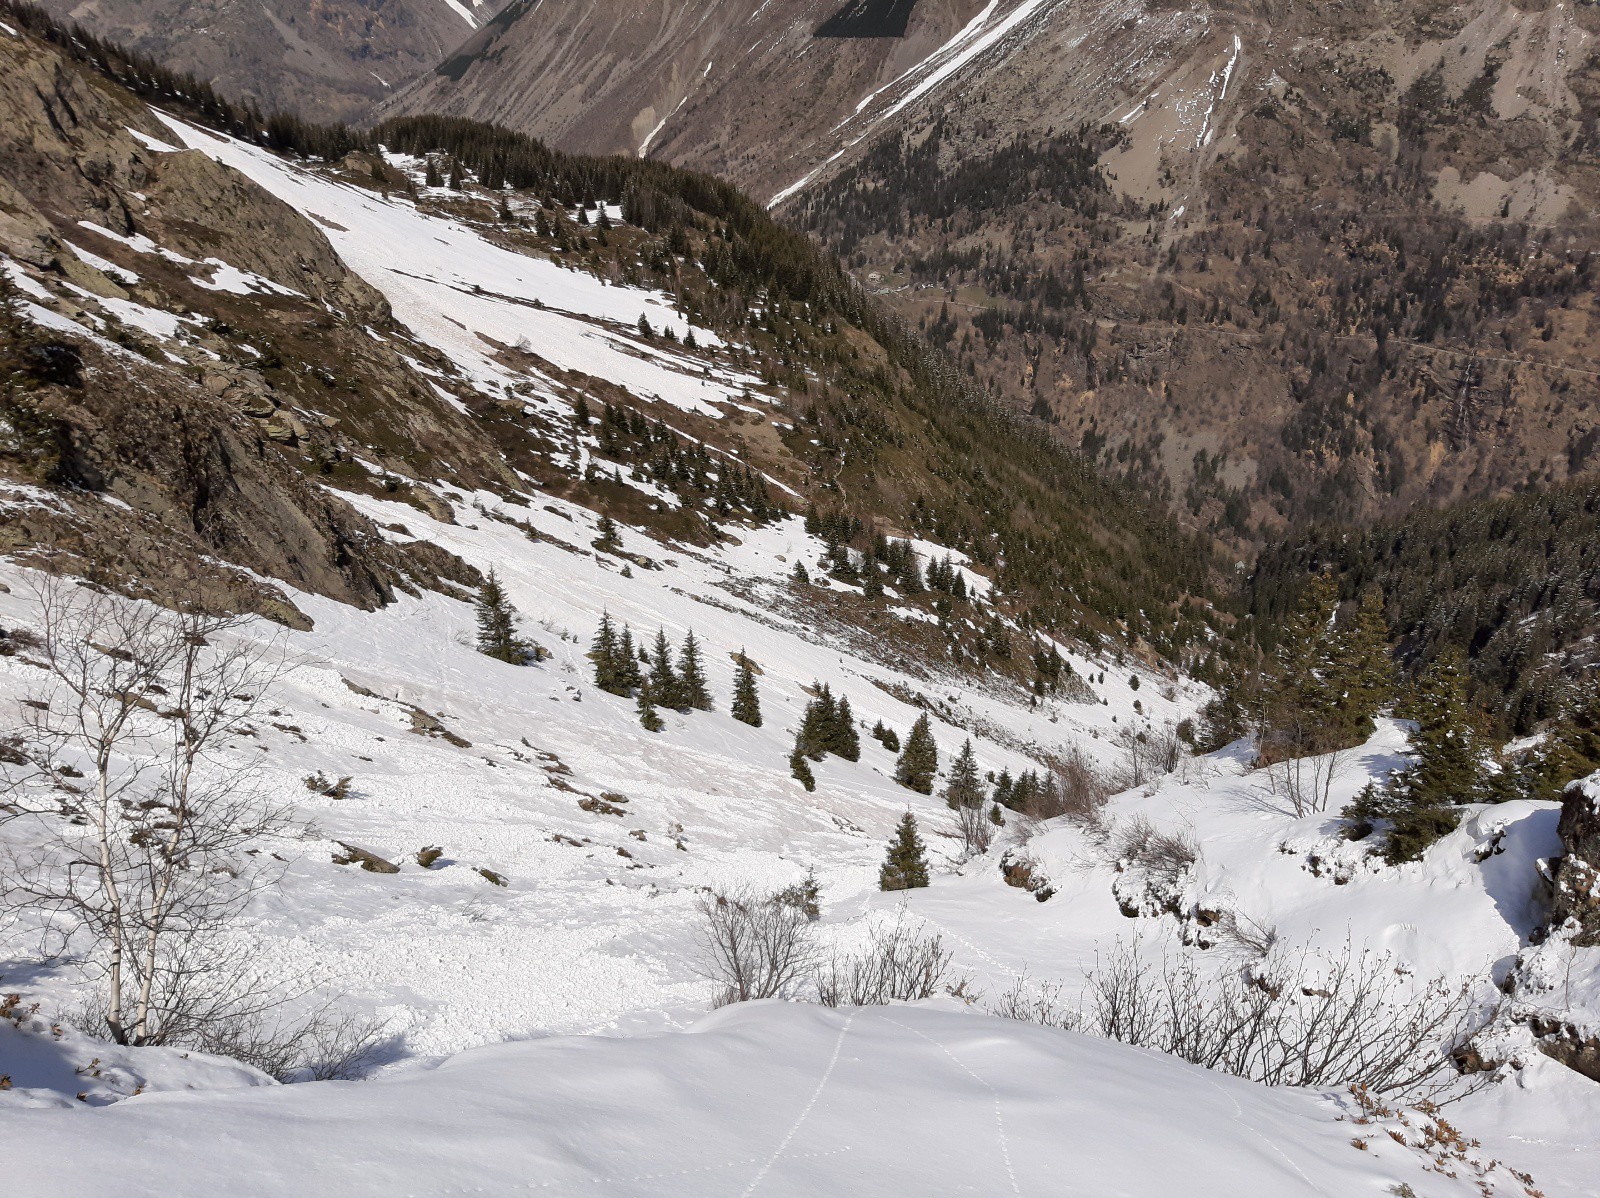 Les restes avalancheux permettant de descendre jusqu'aux environs de 1700m